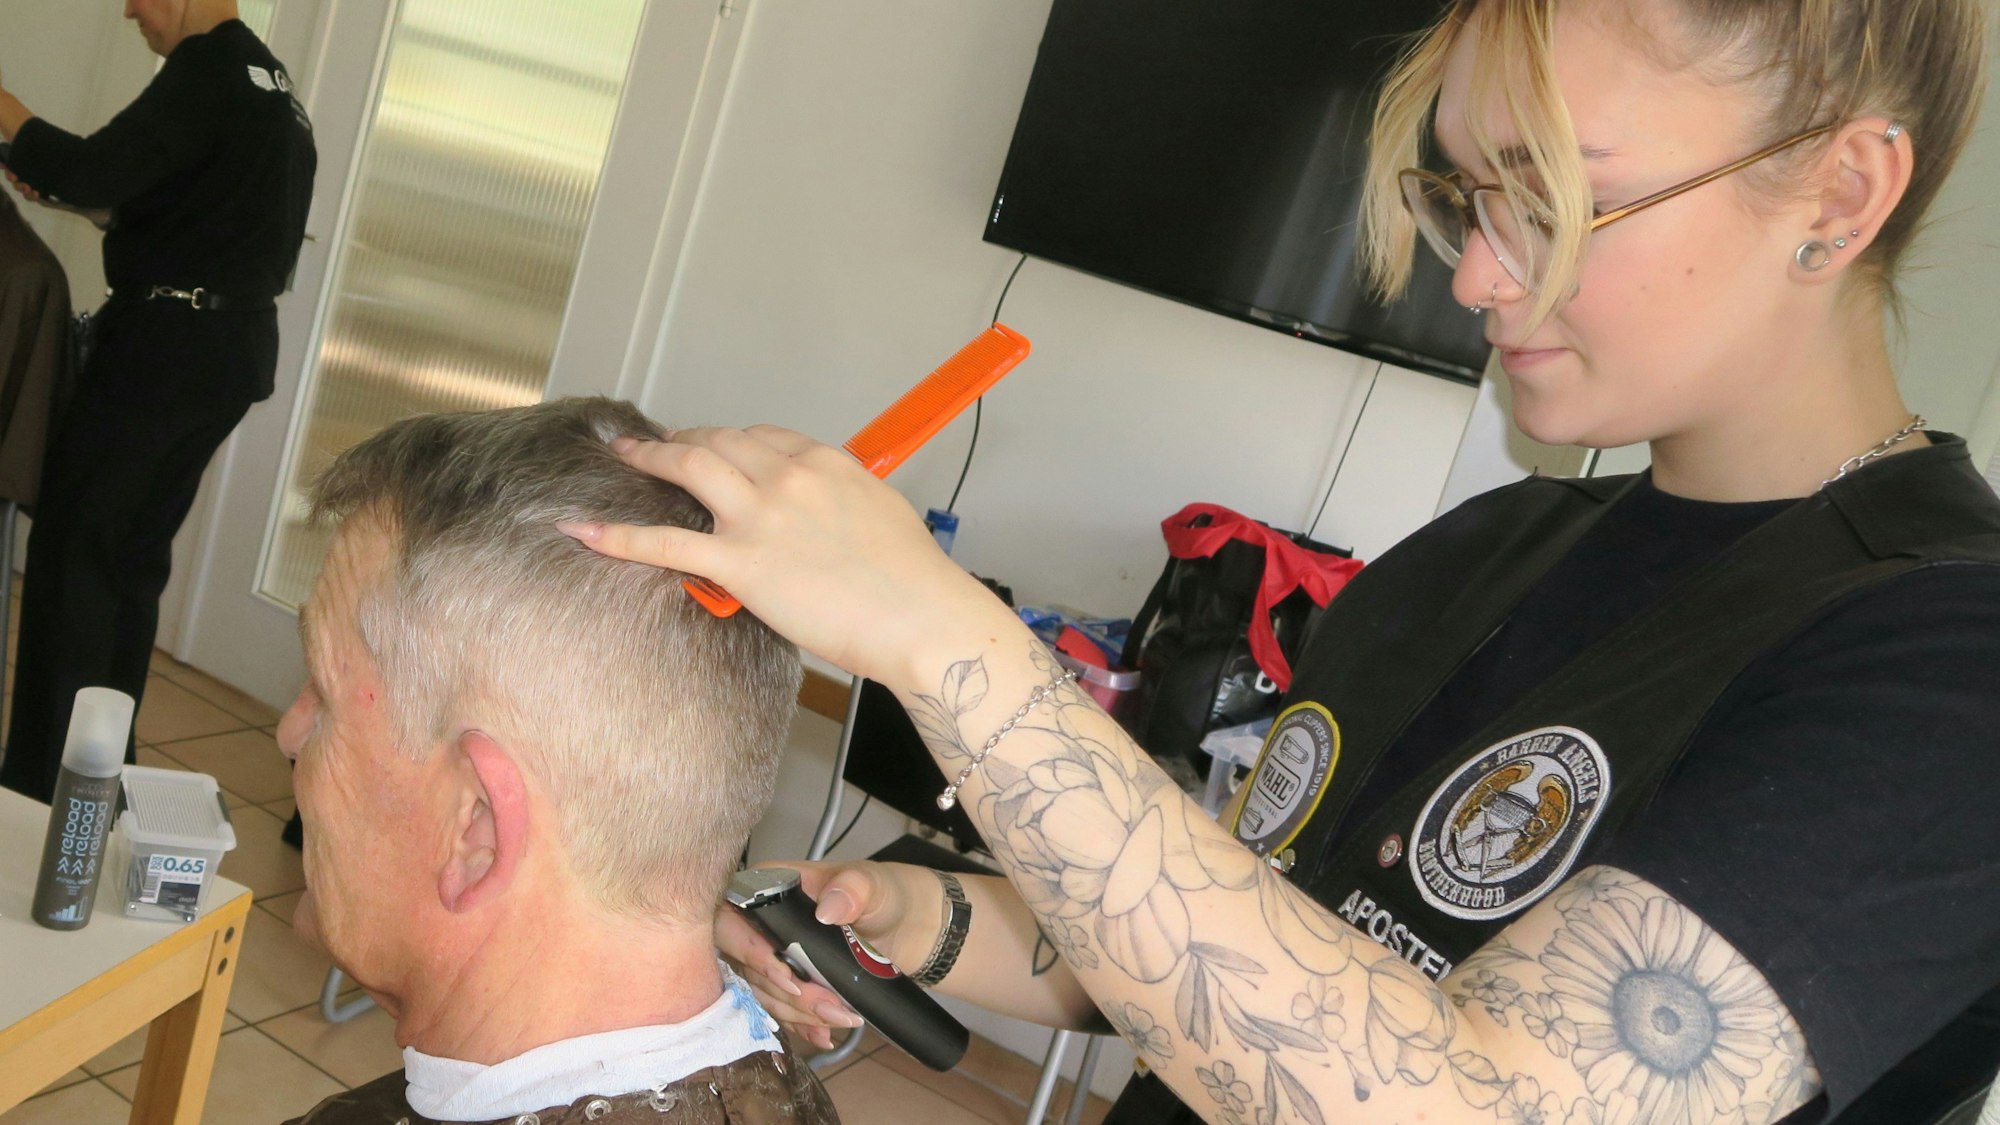 Freiseurin rasiert Mann die Haare.